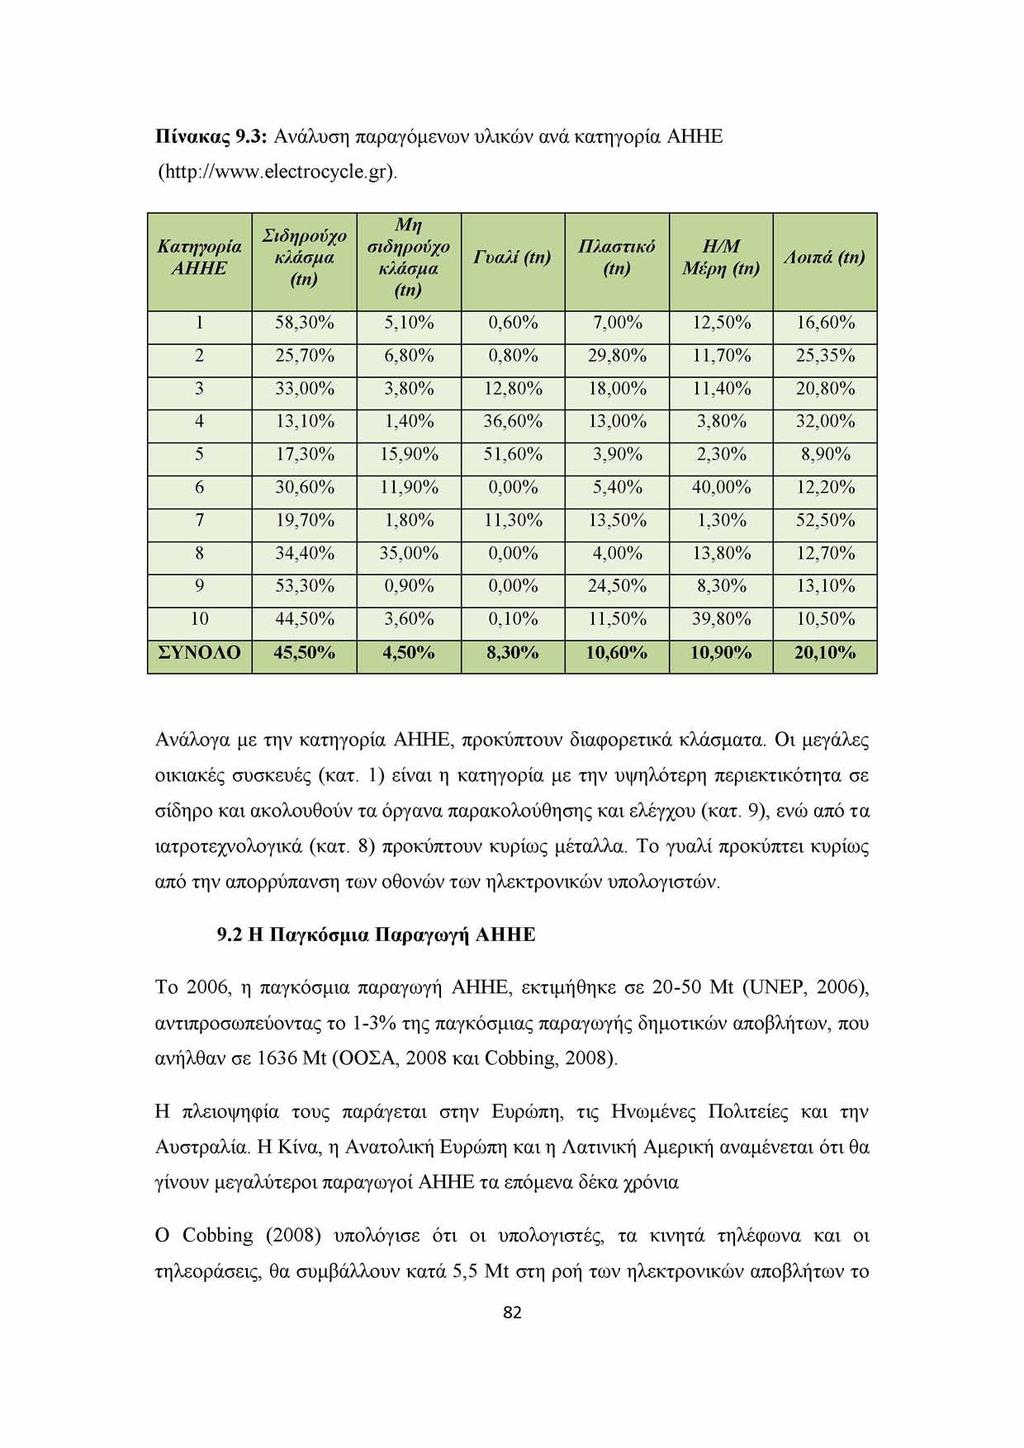 Πίνακας 9.3: Ανάλυση παραγόμενων υλικών ανά κατηγορία ΑΗΗΕ (http://www.electrocycle.gr).